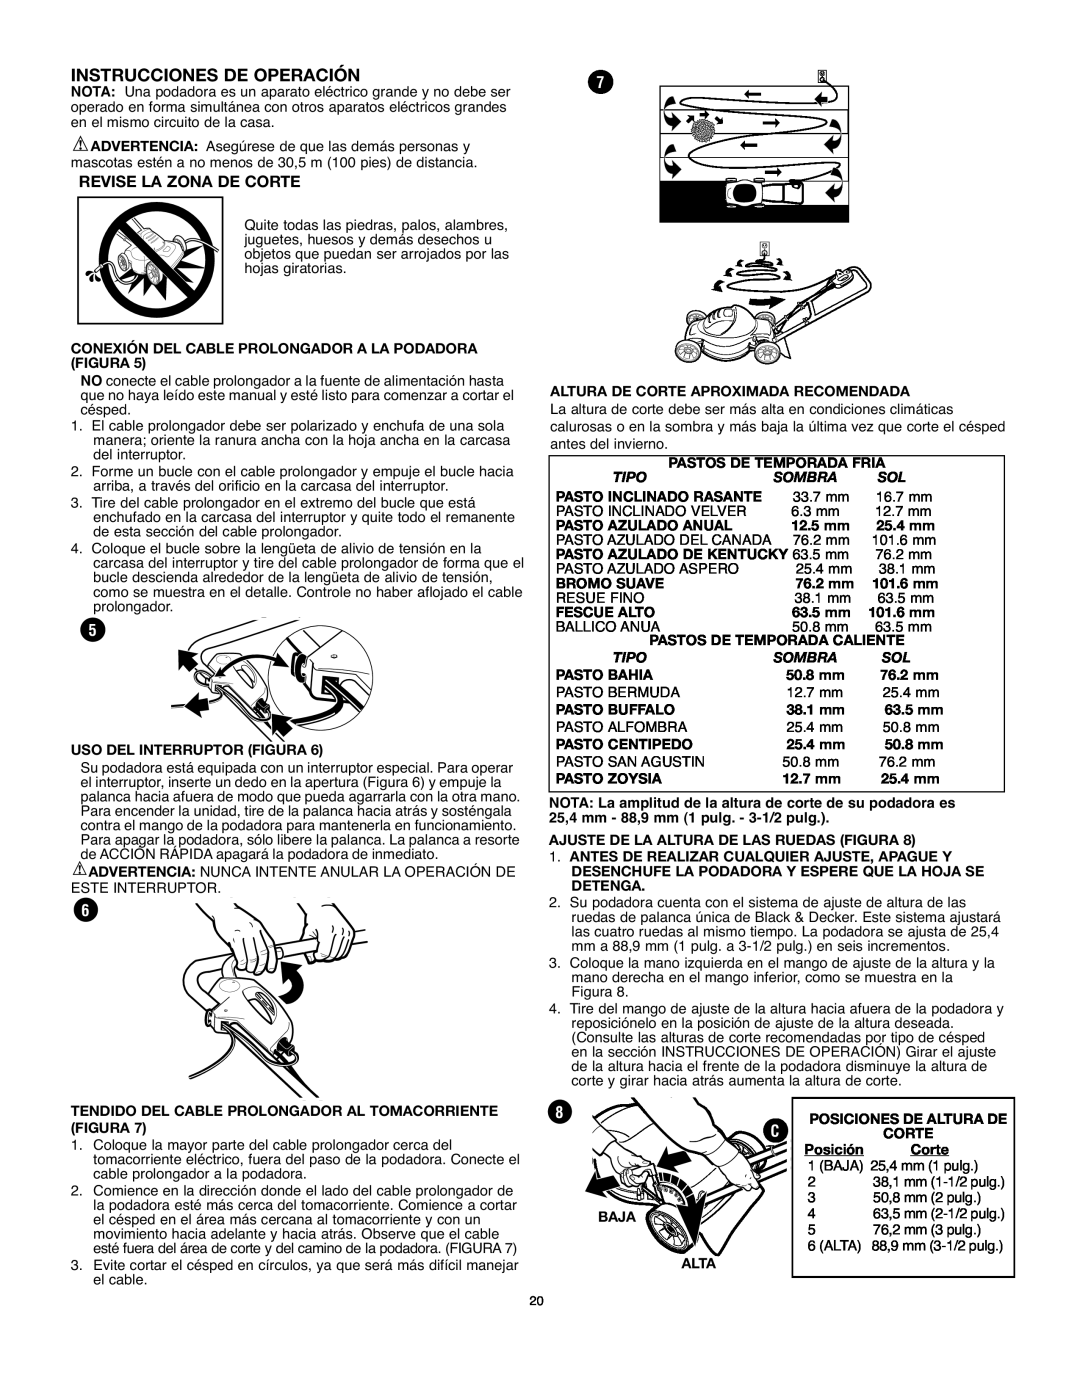 Black & Decker LM175 instruction manual Instrucciones De Operación, Revise La Zona De Corte 